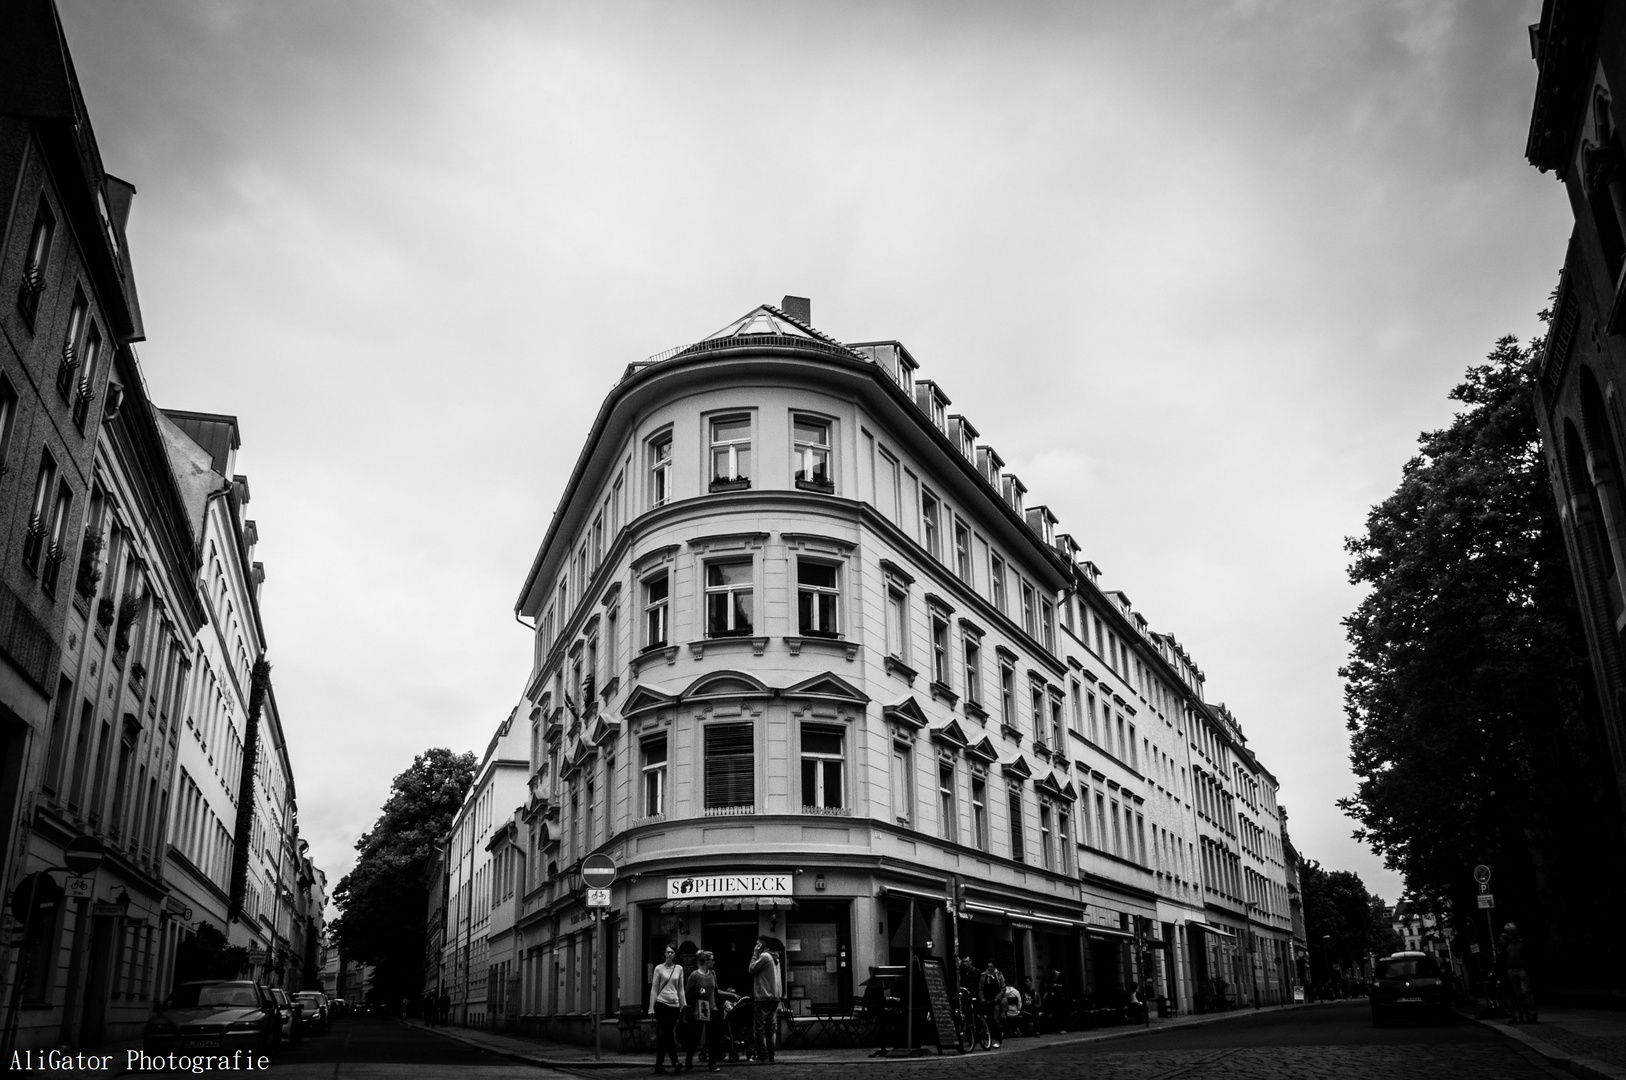 Wallstreet in Berlin